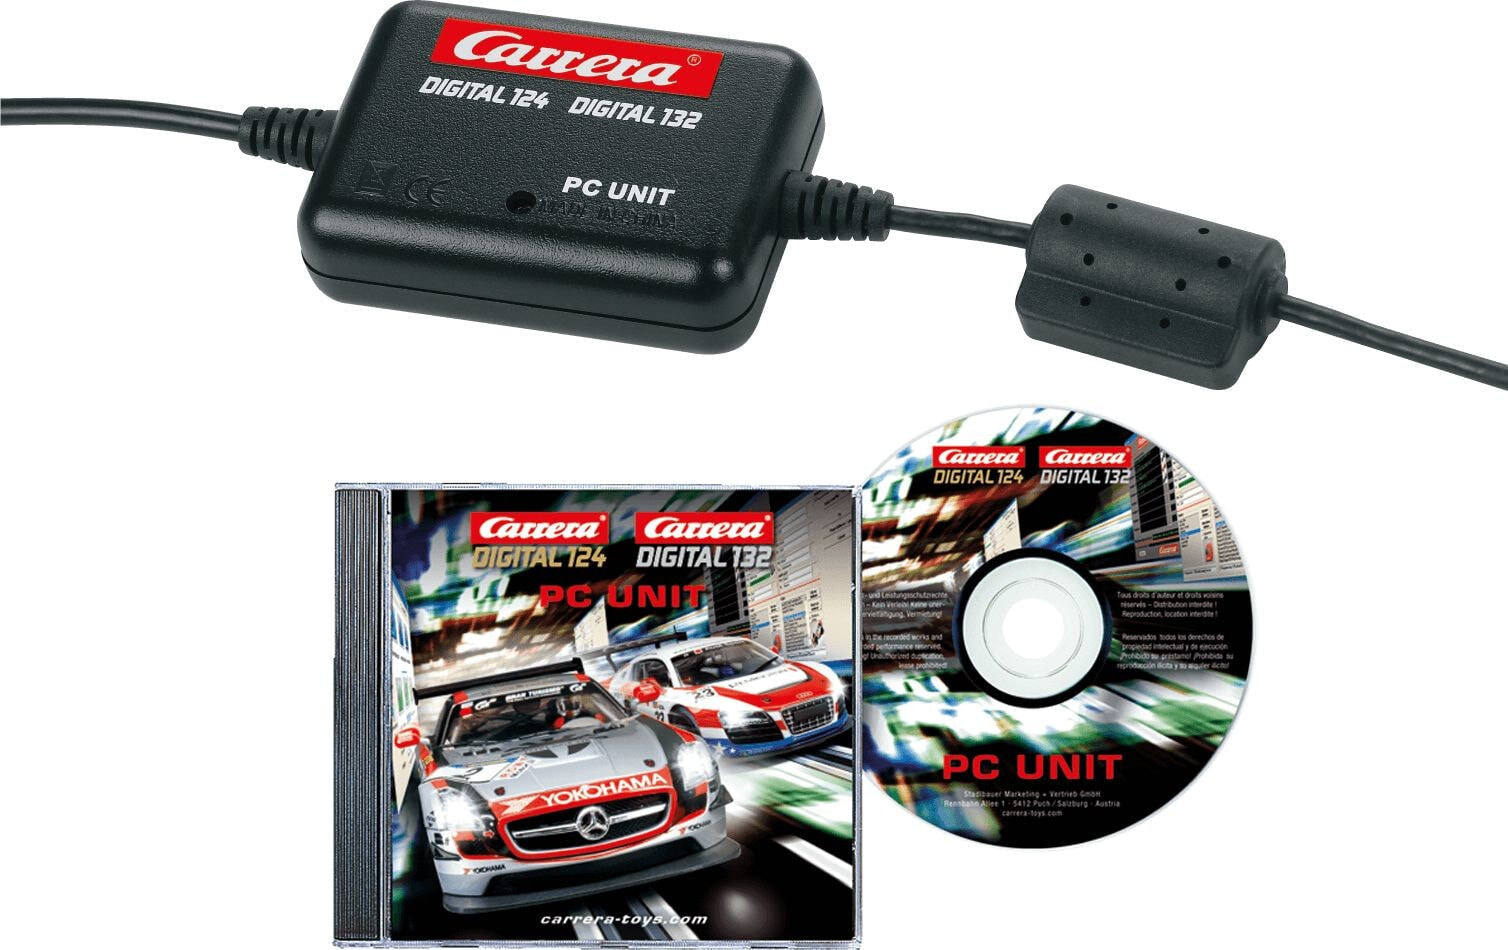 Элемент трека Carrera - Компьютерный блок для счетчика кругов Carrera Digital 124/132